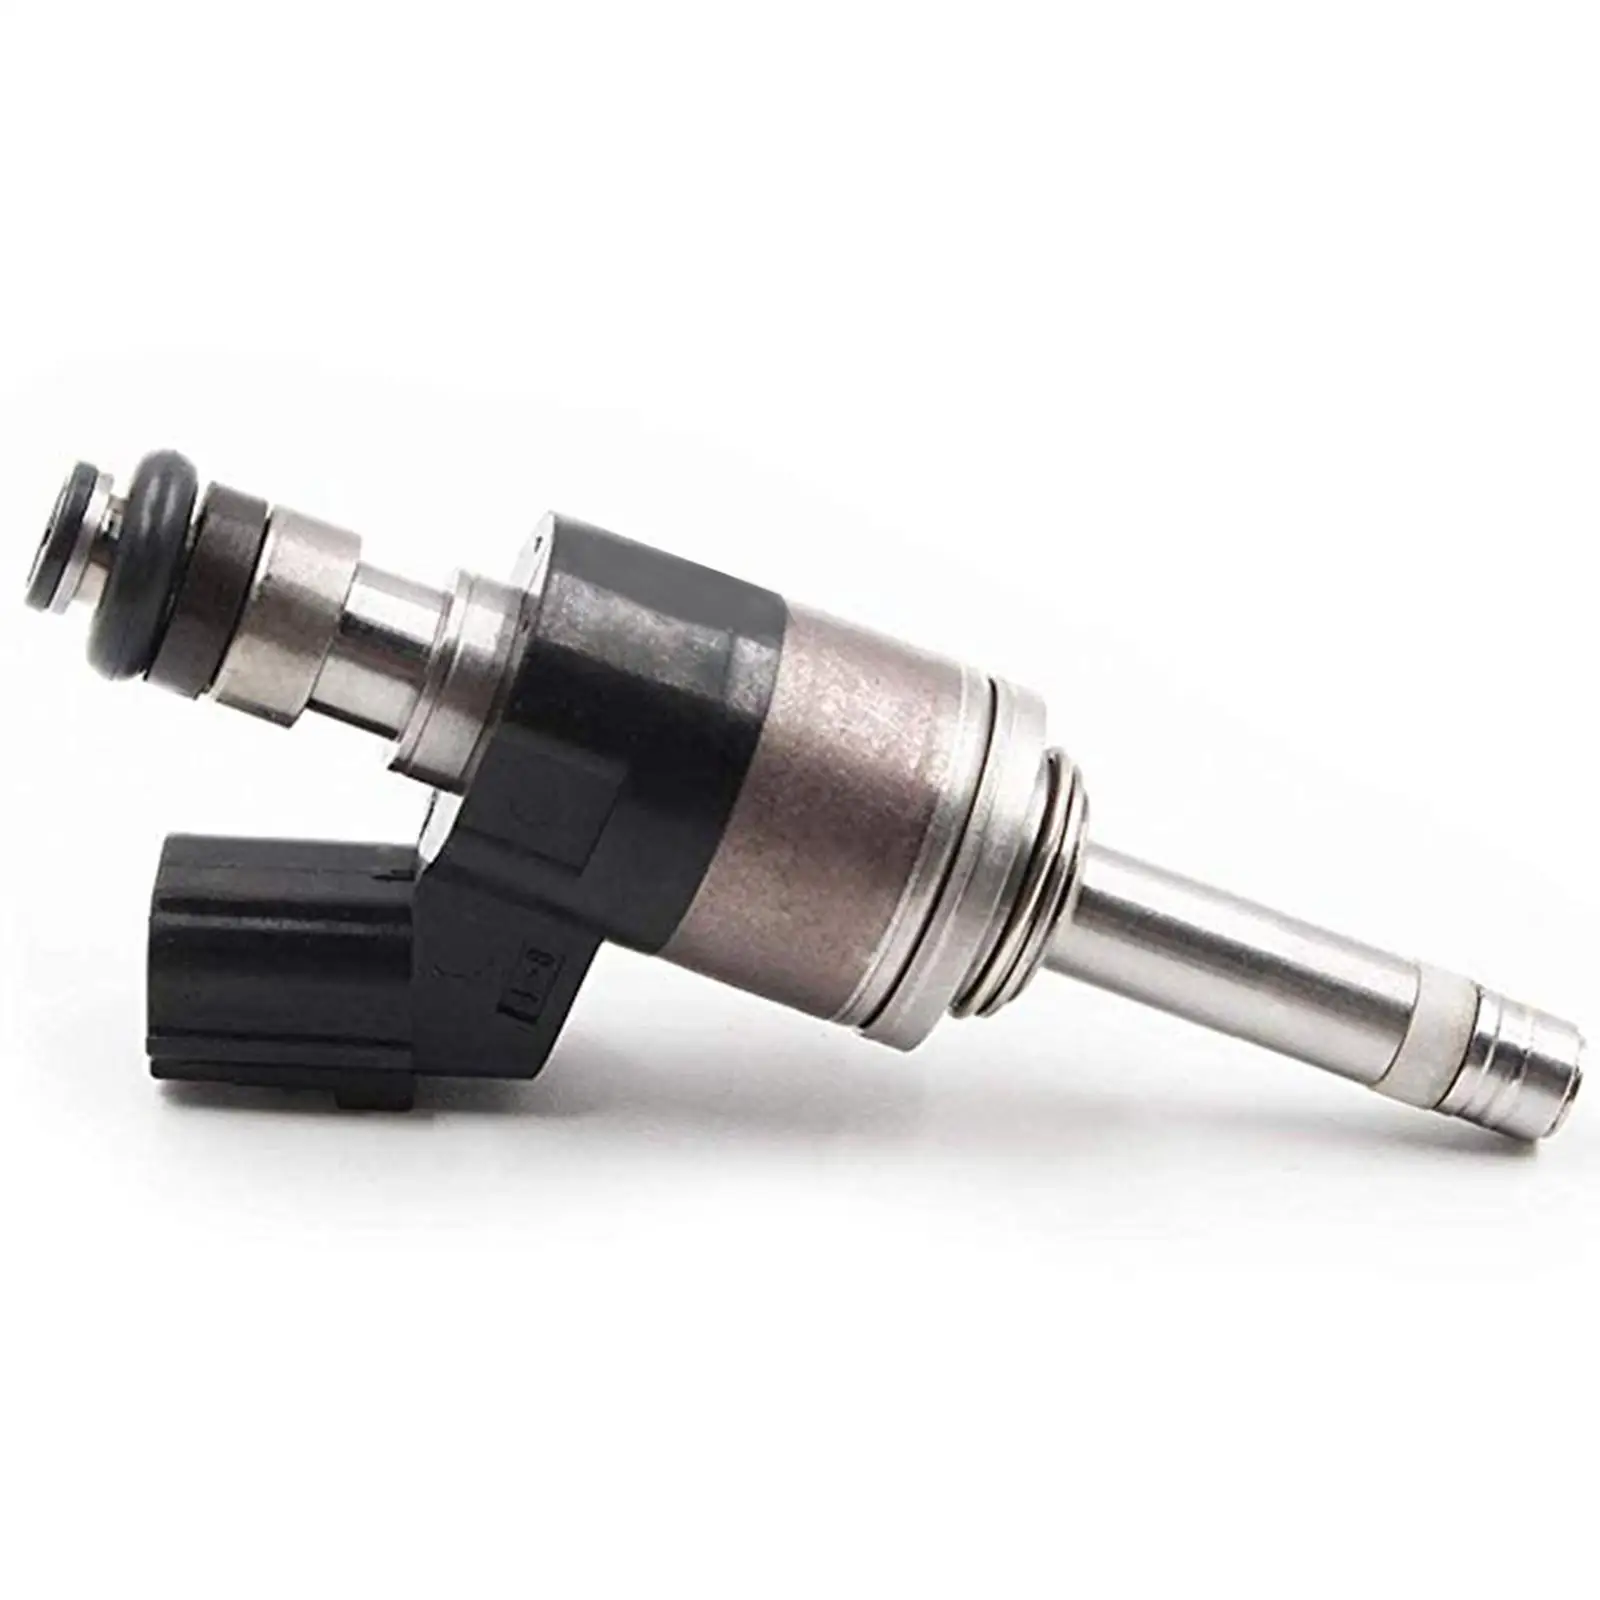 

4 Pieces Car Fuel Injector Repairs Parts 16010-5R1-305 for Honda Fit 1.5L L4 2015-2020 Durable Auto Parts Car Accessories